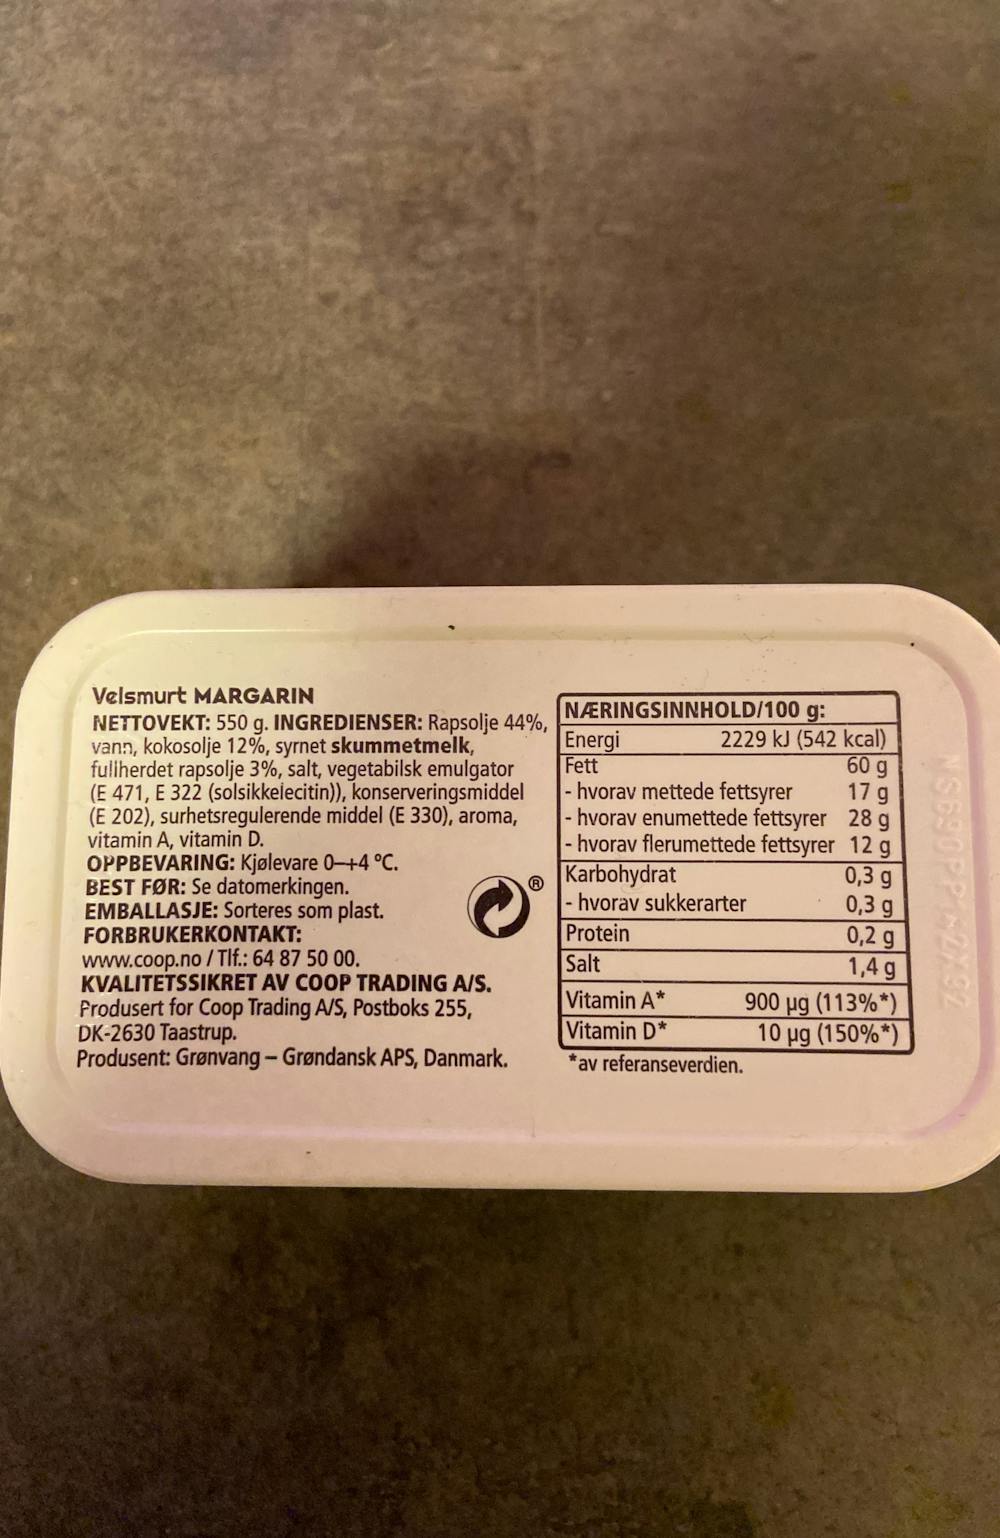 Ingredienslisten til Velsmurt margarin, Coop